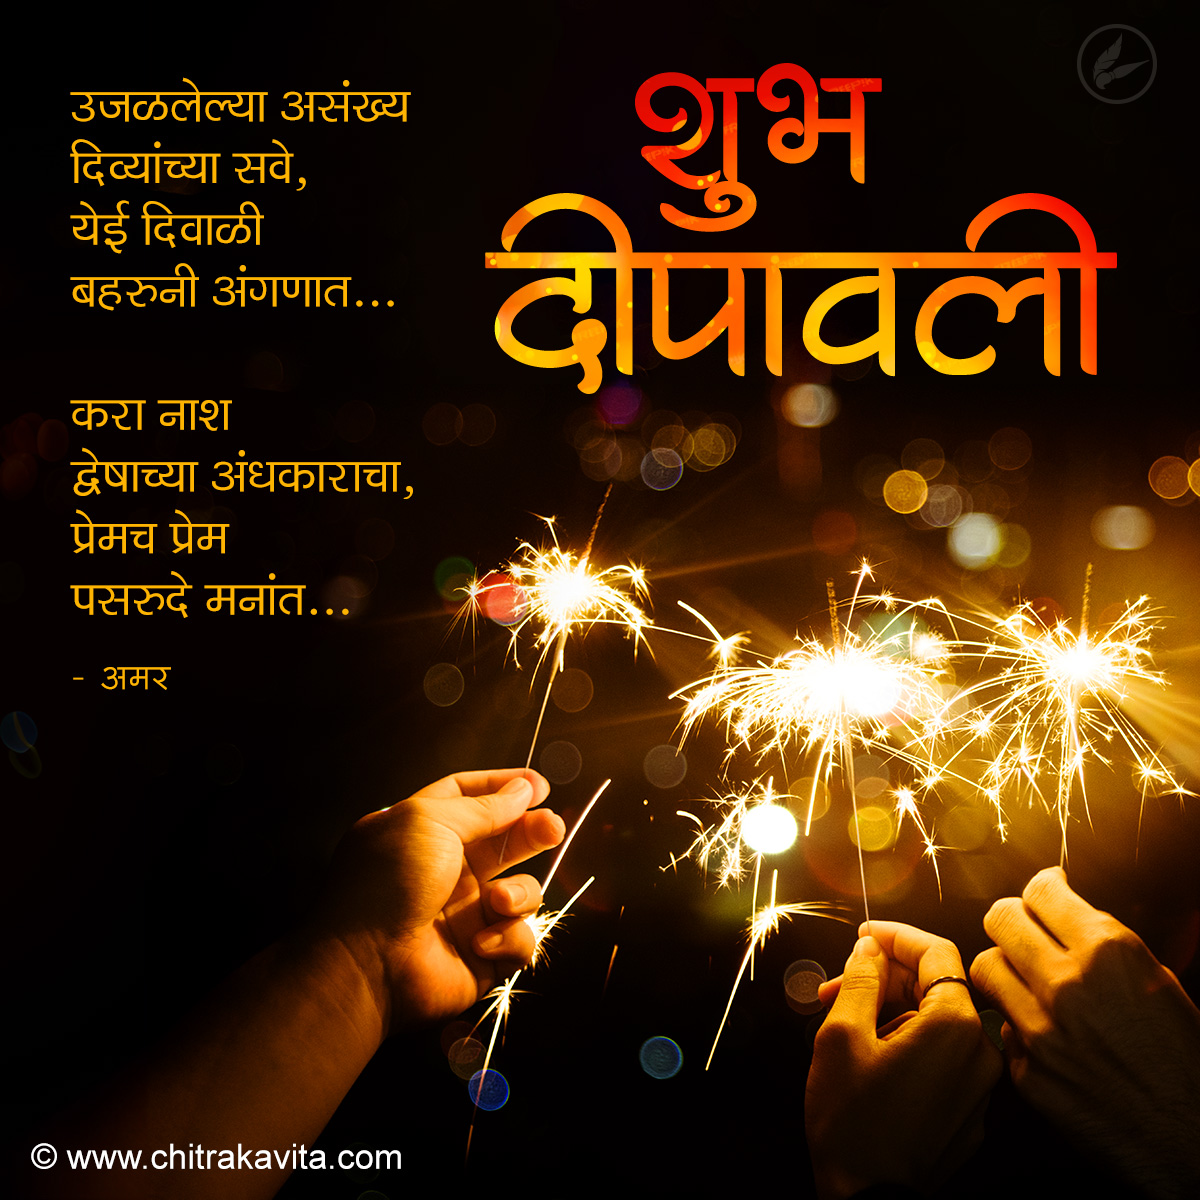 Aali-Diwali-Baharuni Marathi Diwali Greeting Card